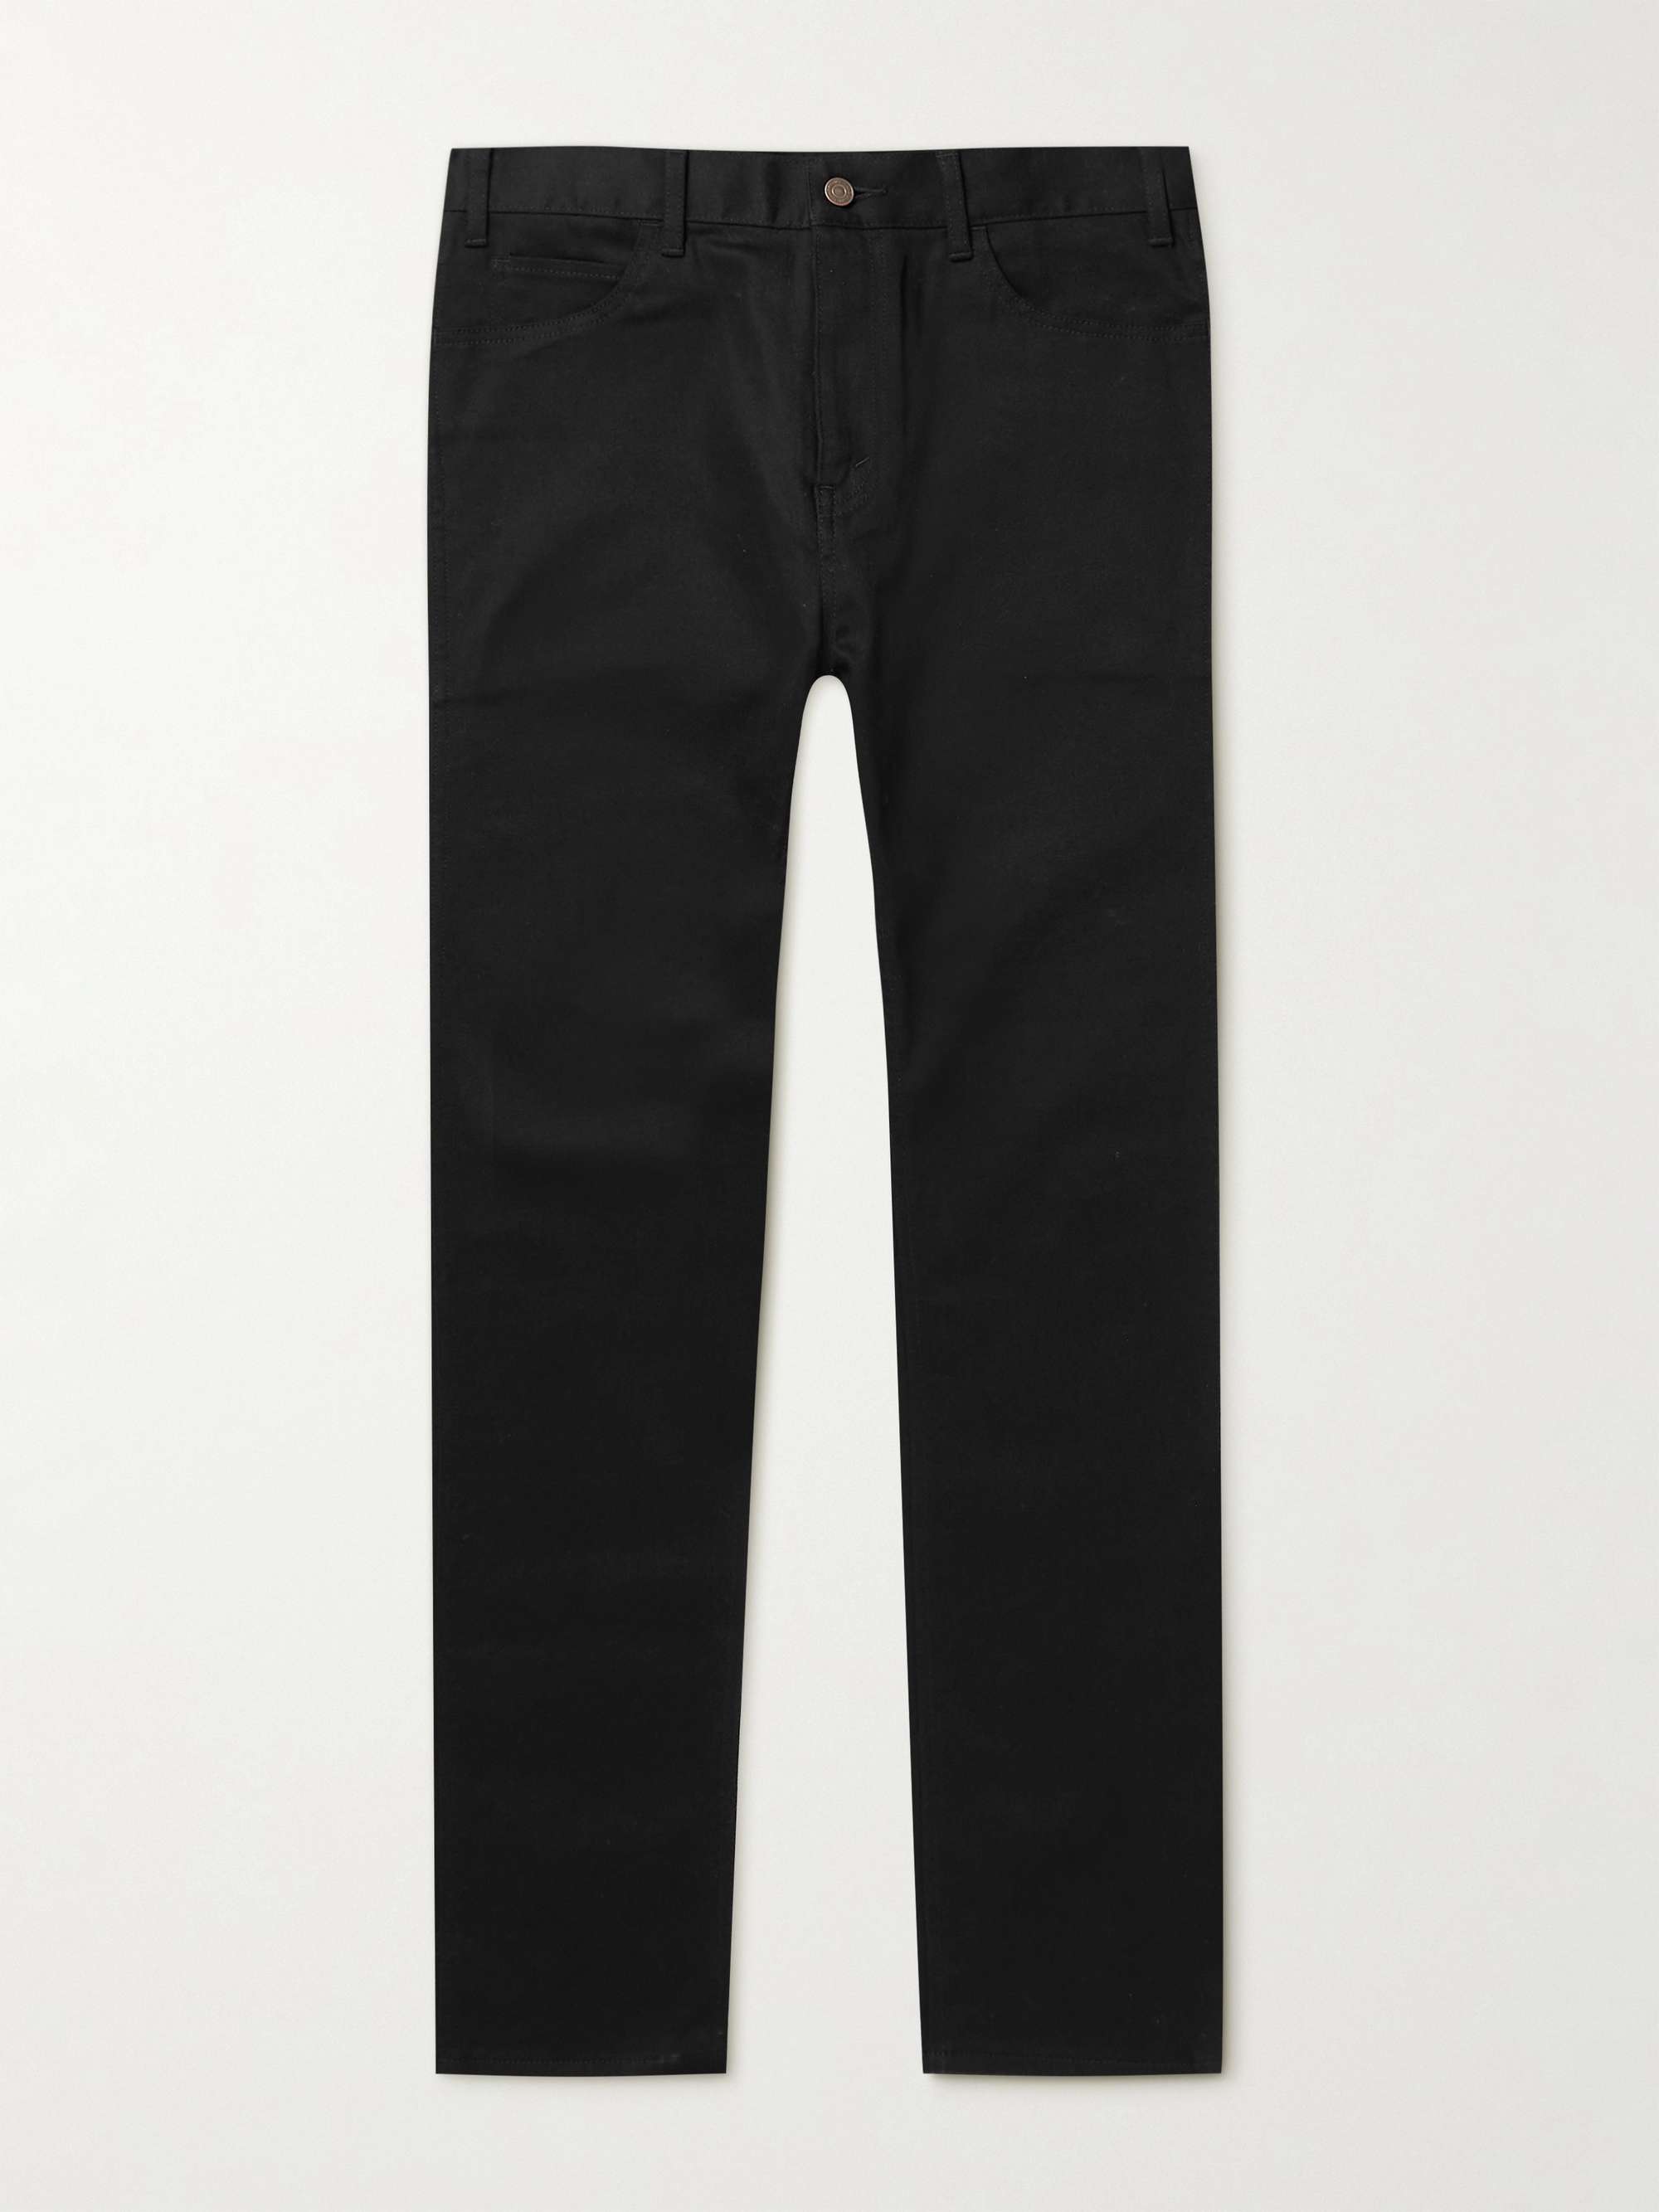 Black Low-Rise Skinny-Fit Jeans | CELINE HOMME | MR PORTER